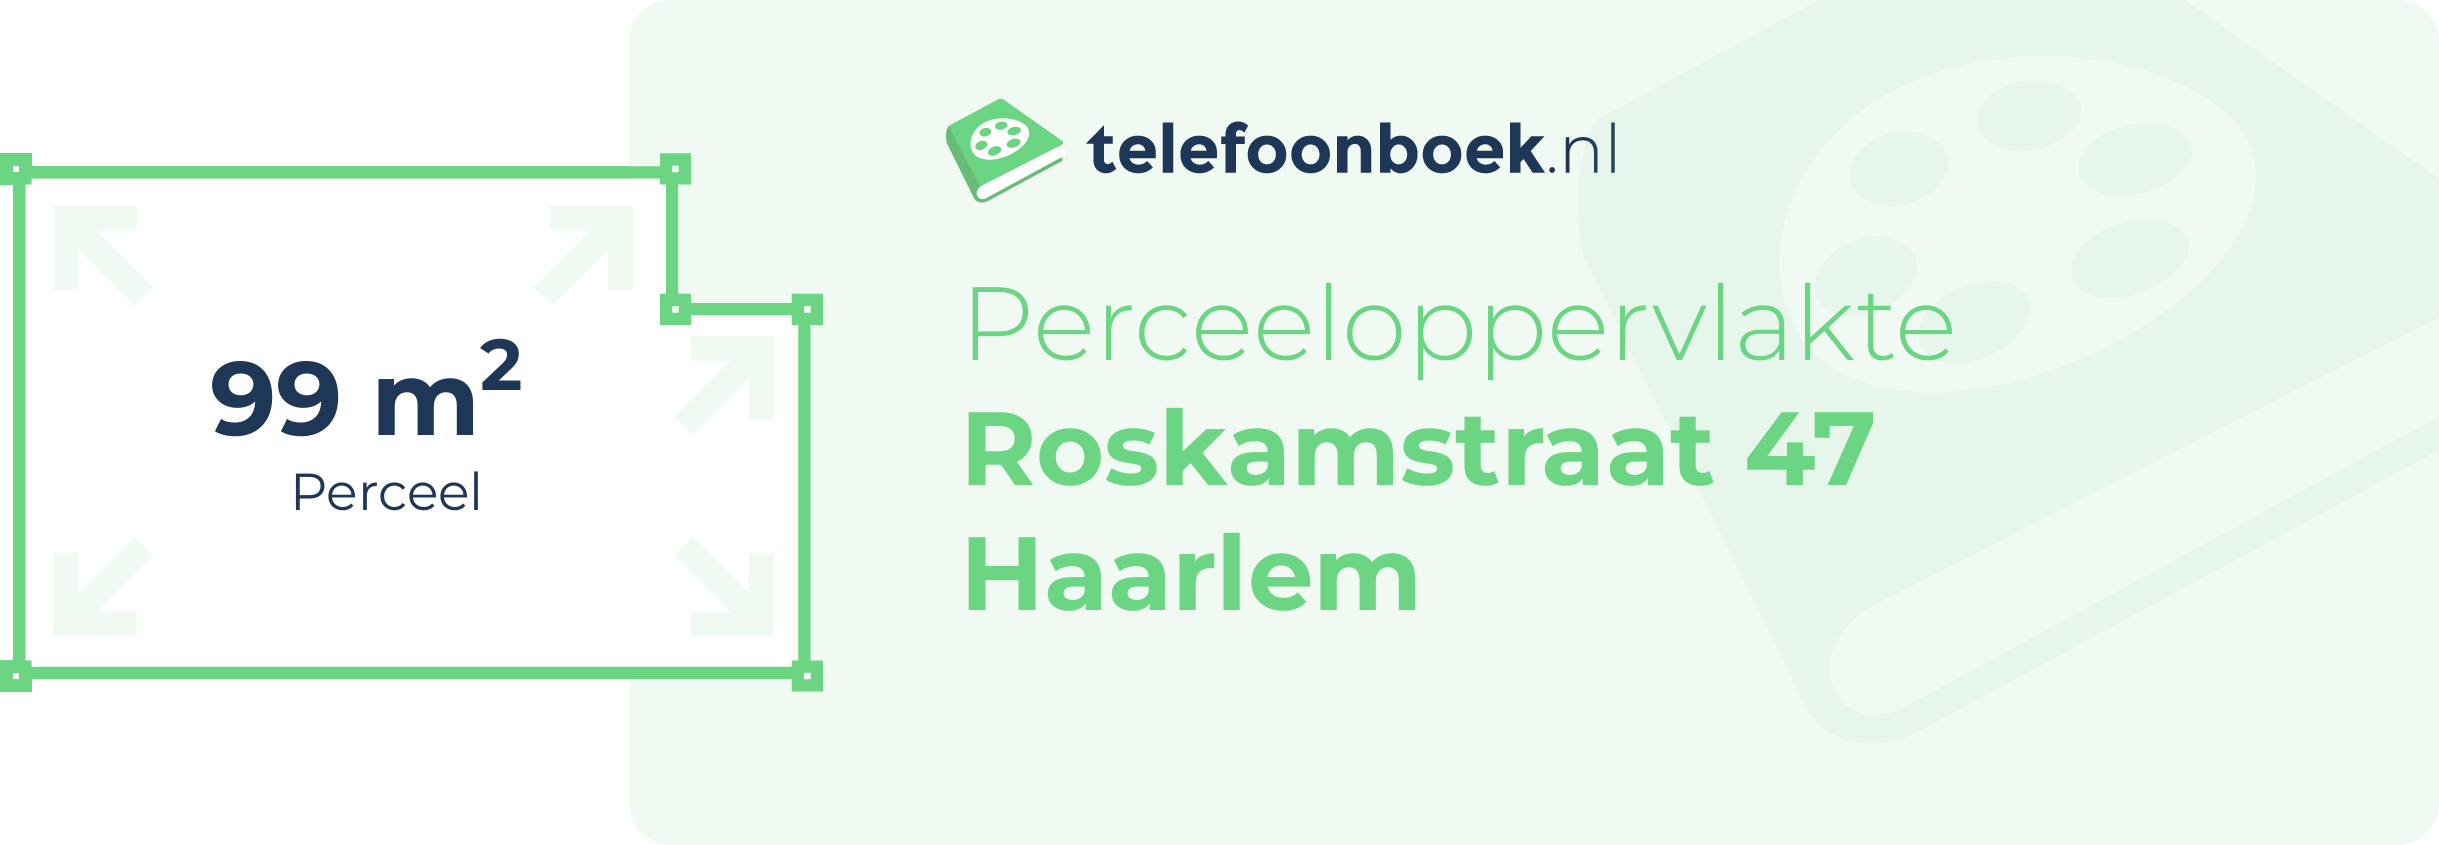 Perceeloppervlakte Roskamstraat 47 Haarlem